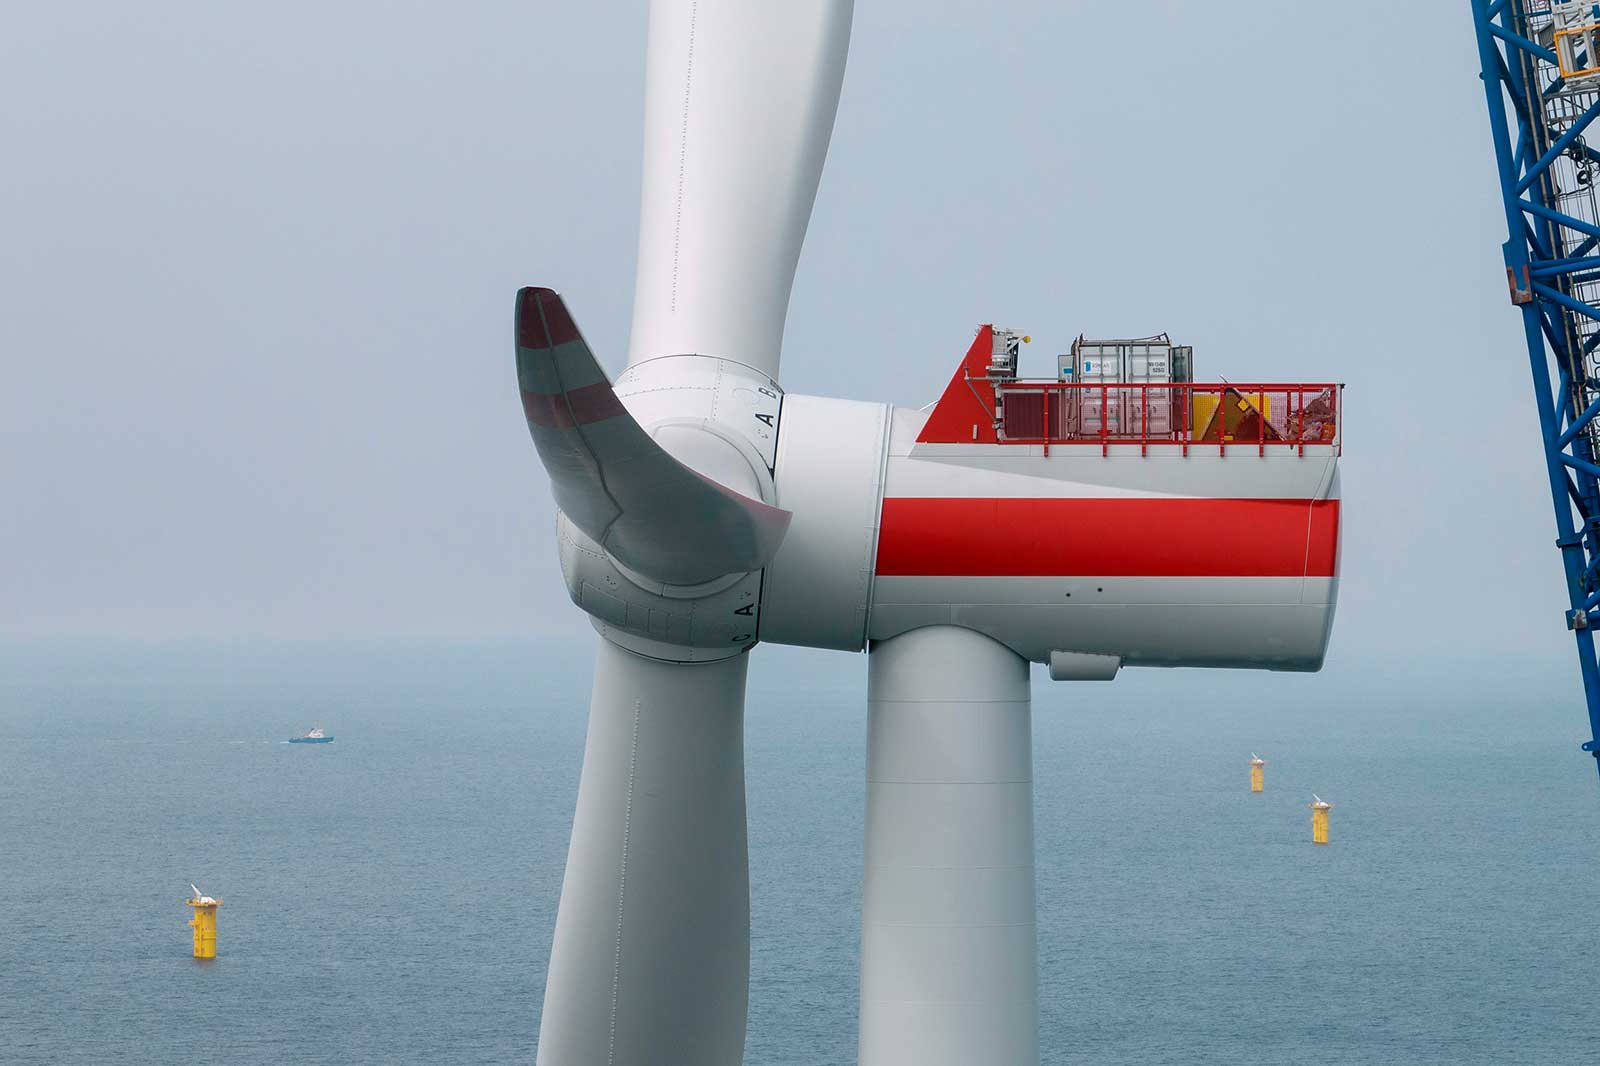 Baufortschritt: RWE Offshore wind farm Kaskasi